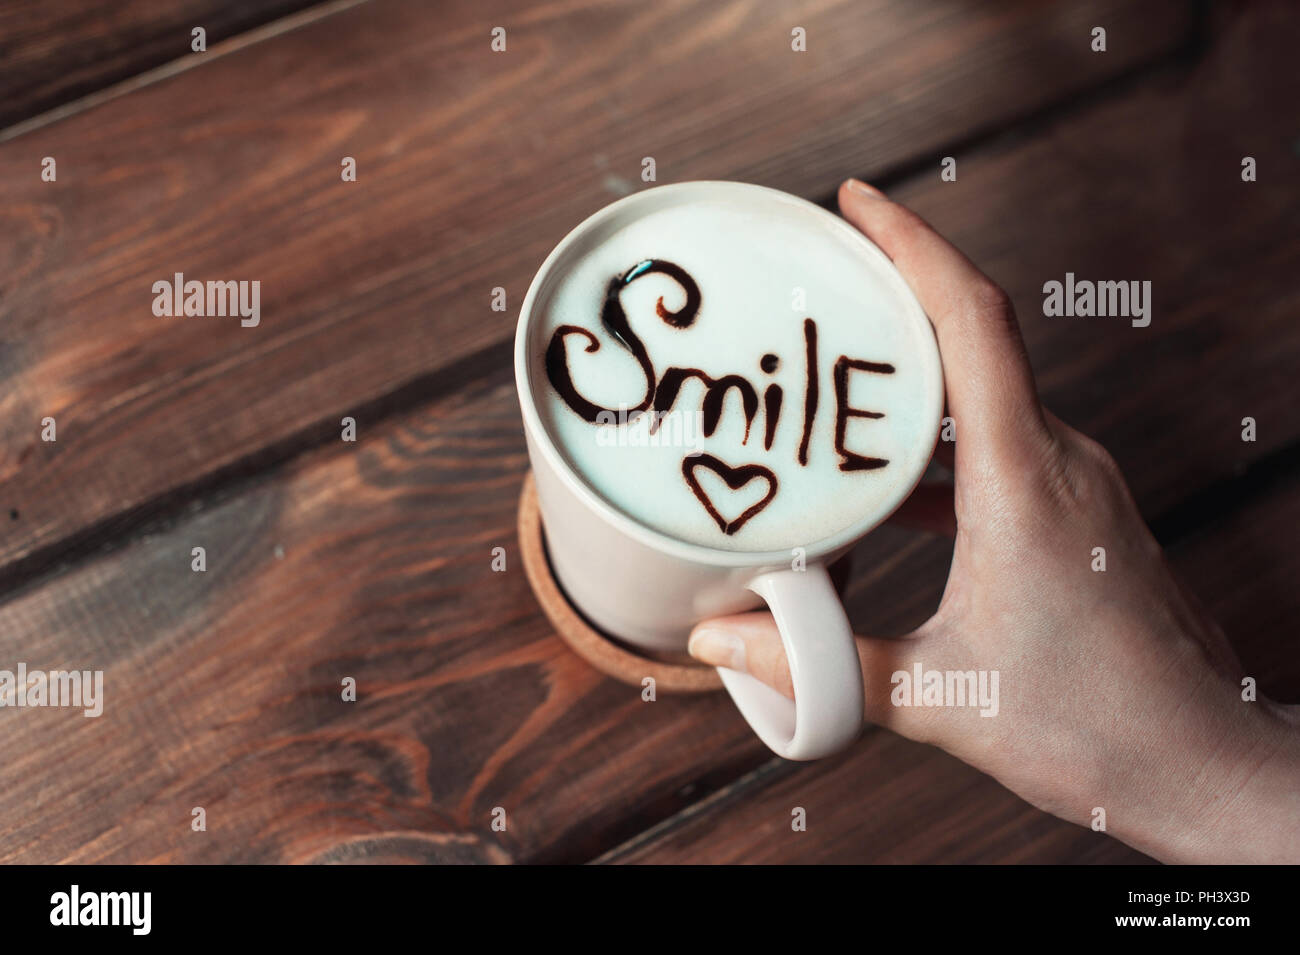 Vue de dessus. Cappuccino avec dessin, la mousse ou le latte art avec l'inscription Banque D'Images